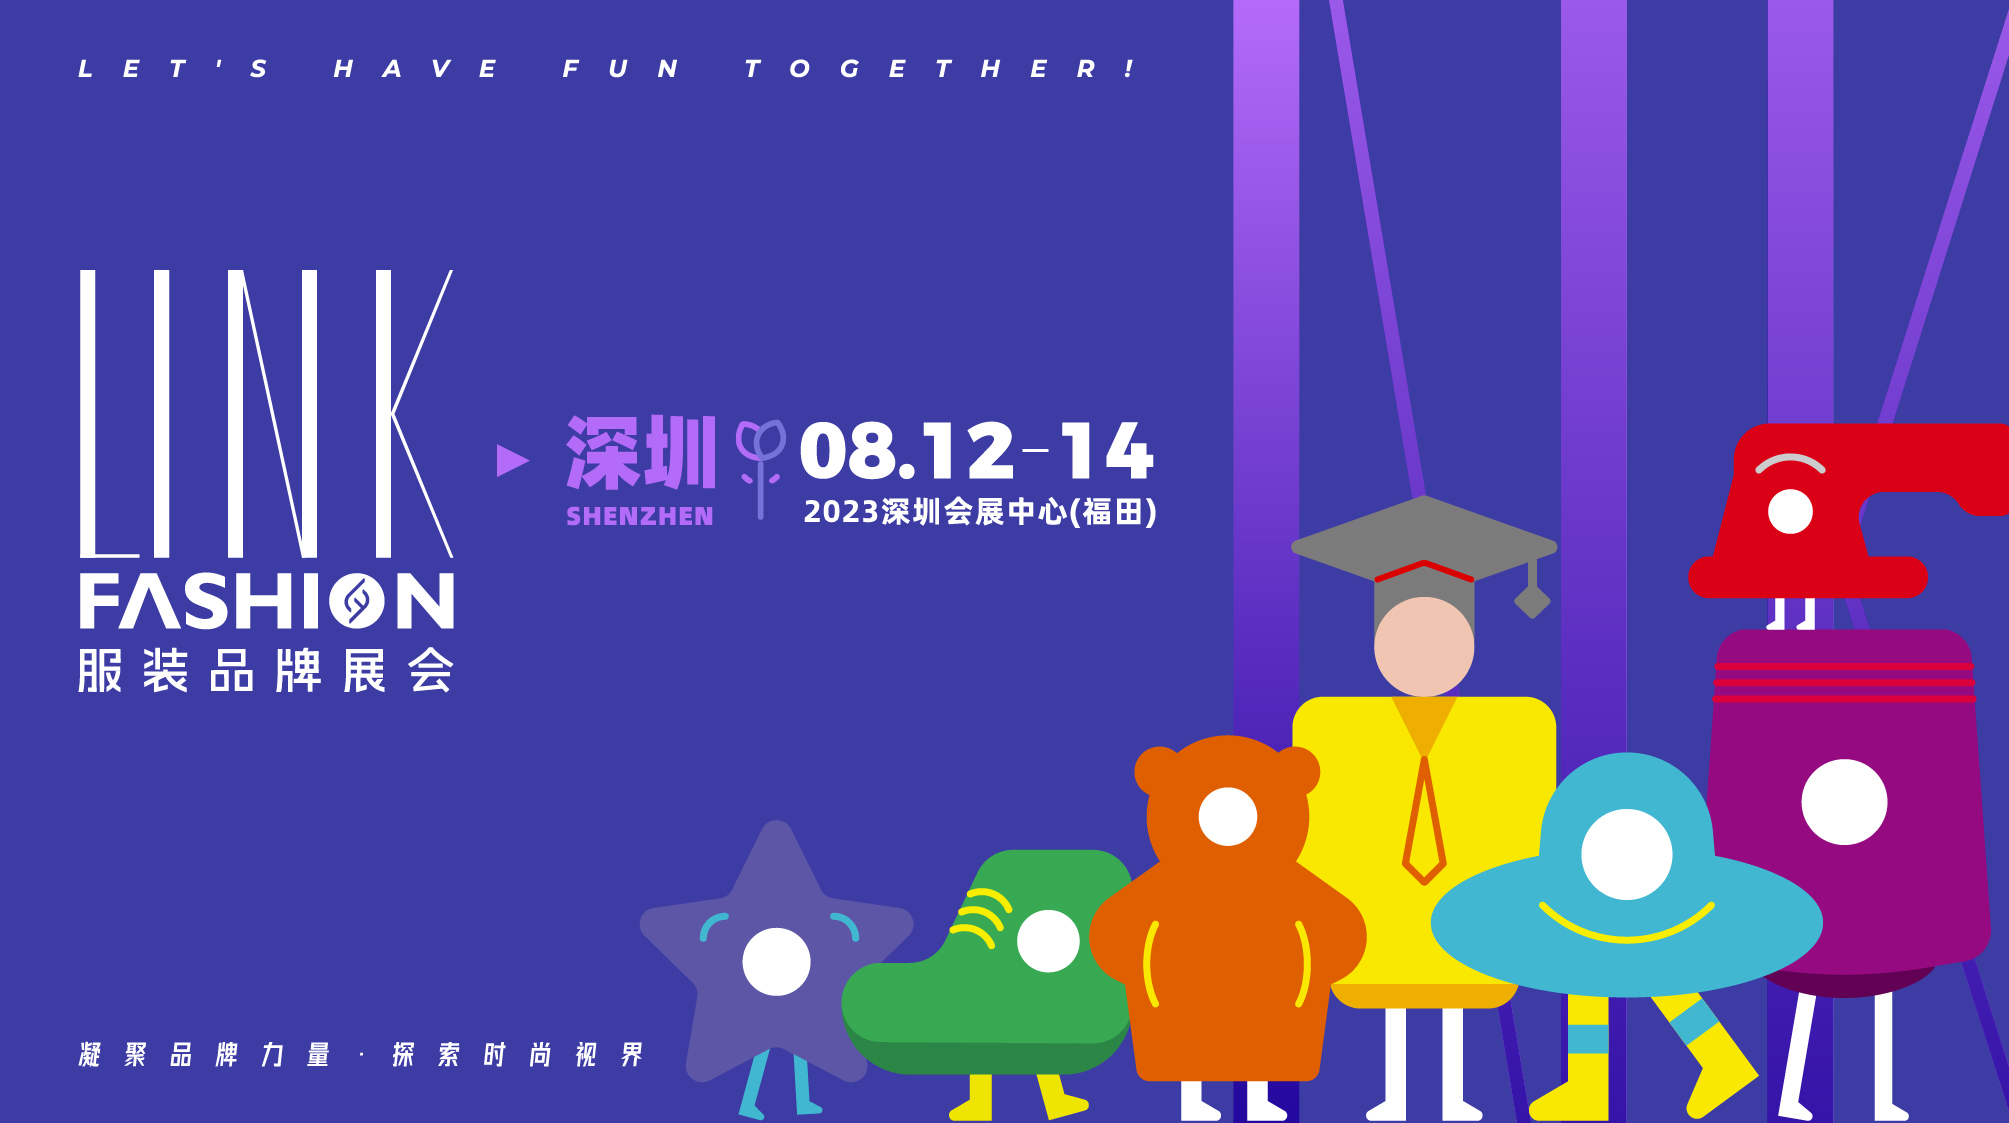 2023 LINK FASHION上海展展后报告1_深圳KV.jpg